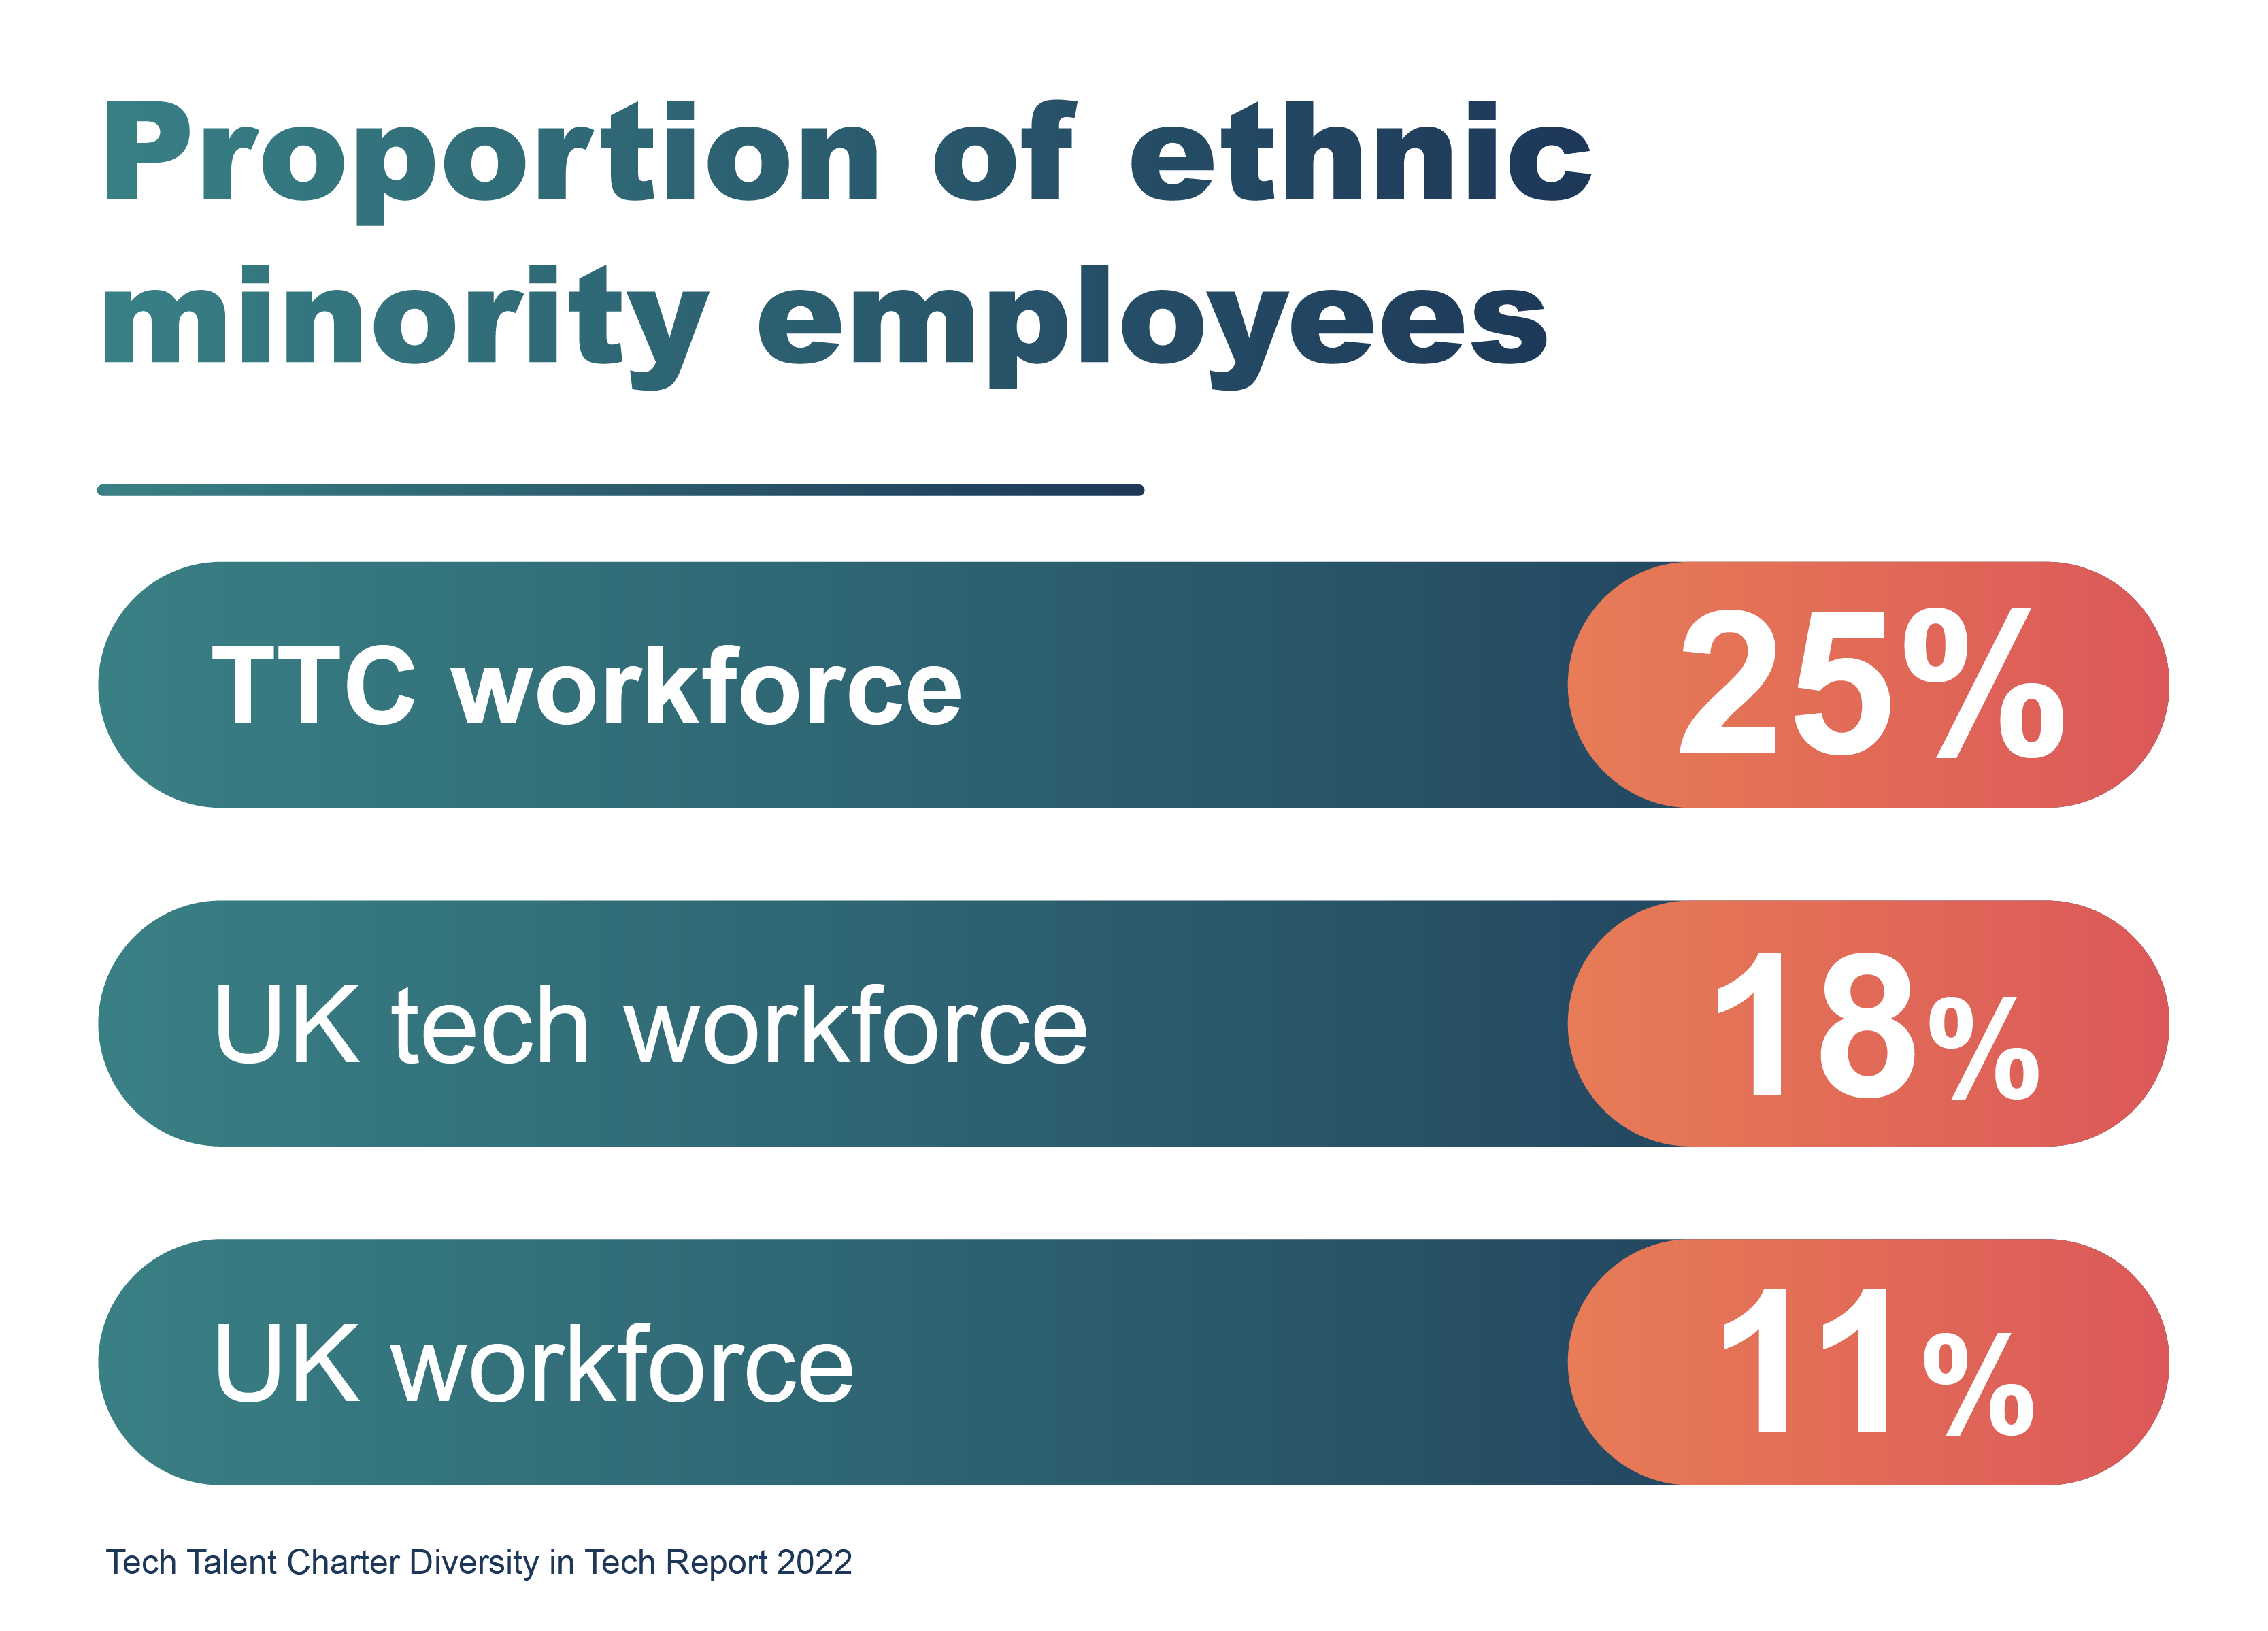 Proportion of ethnic minority employees: TTC workforce = 25%, UK tech workforce = 18%, UK workforce = 11%